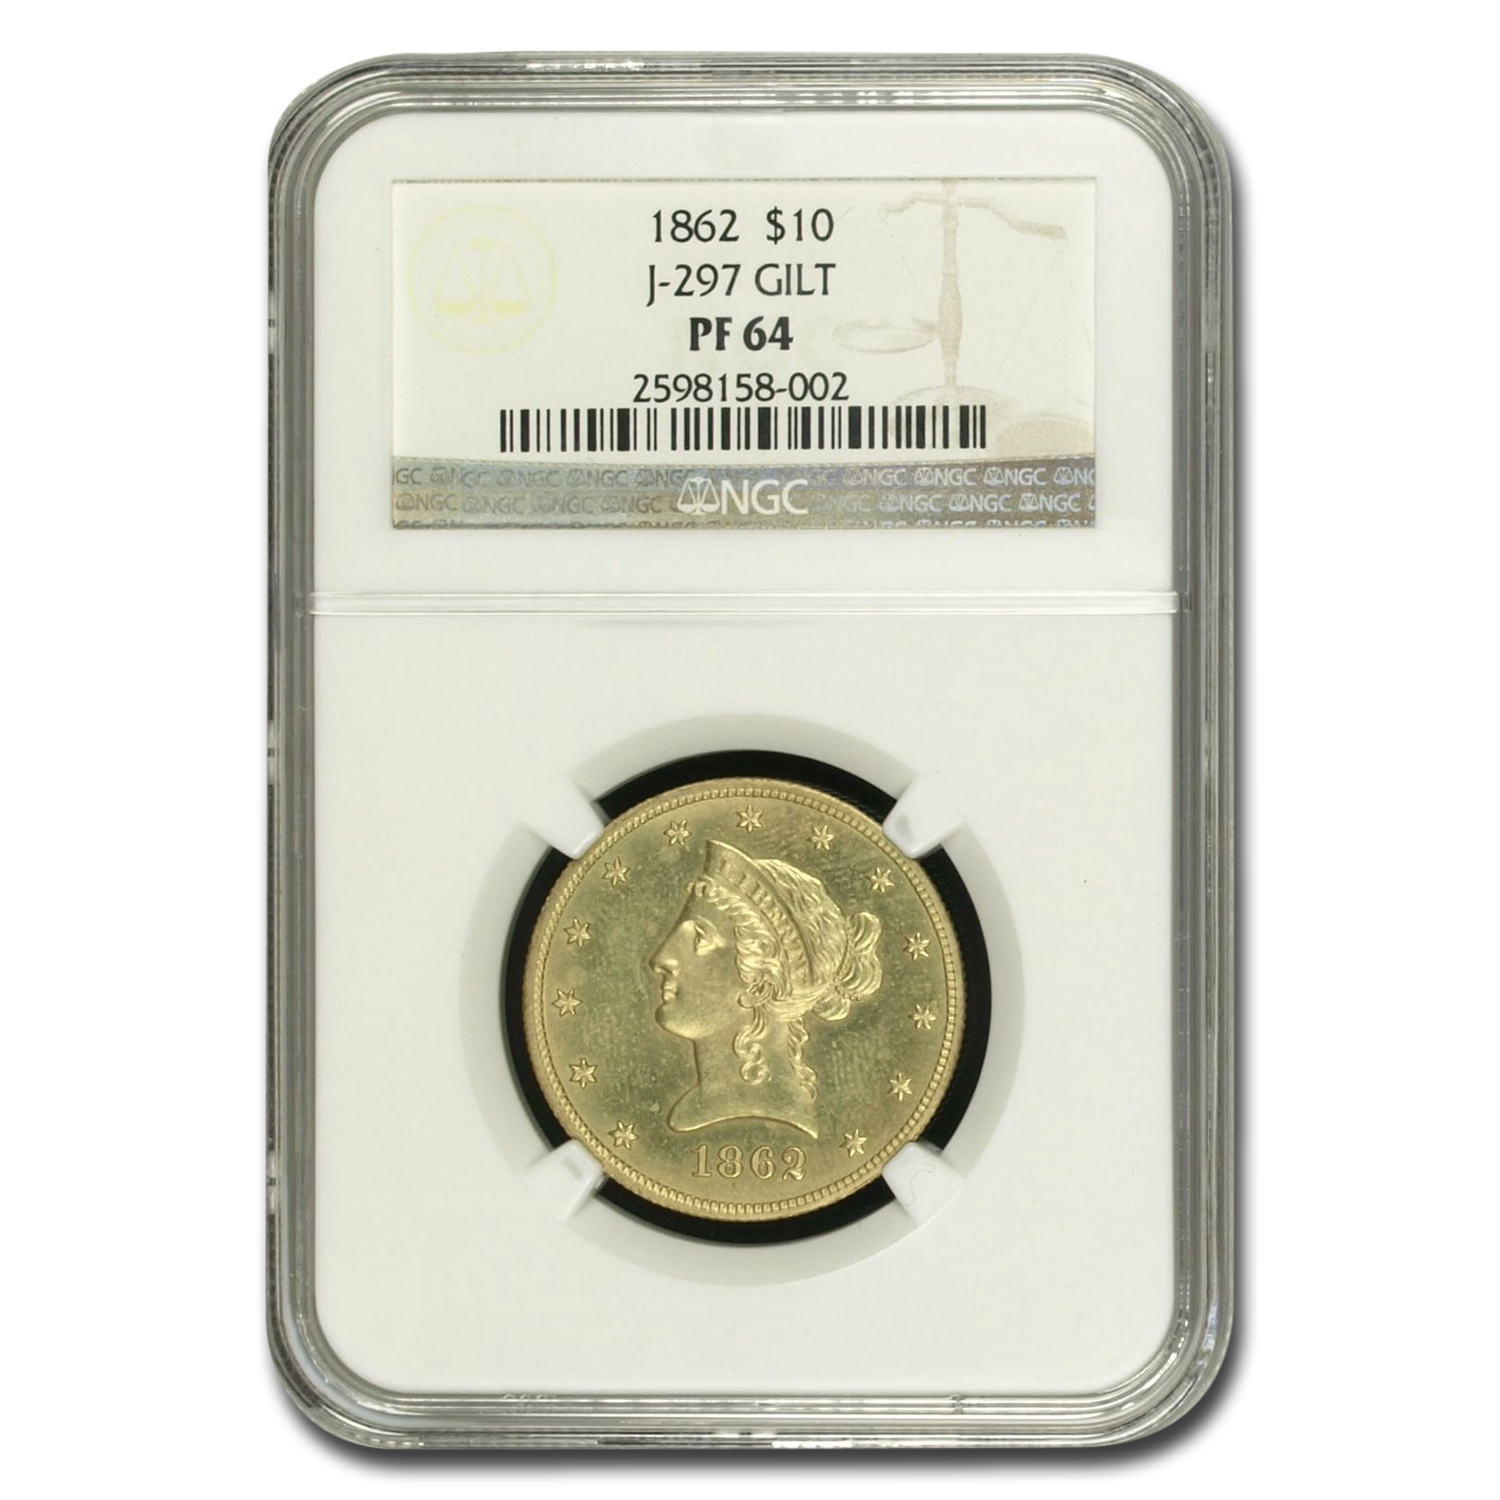 Buy 1862 $10 Liberty Gold Eagle PF-64 NGC (J-297 Gilt)